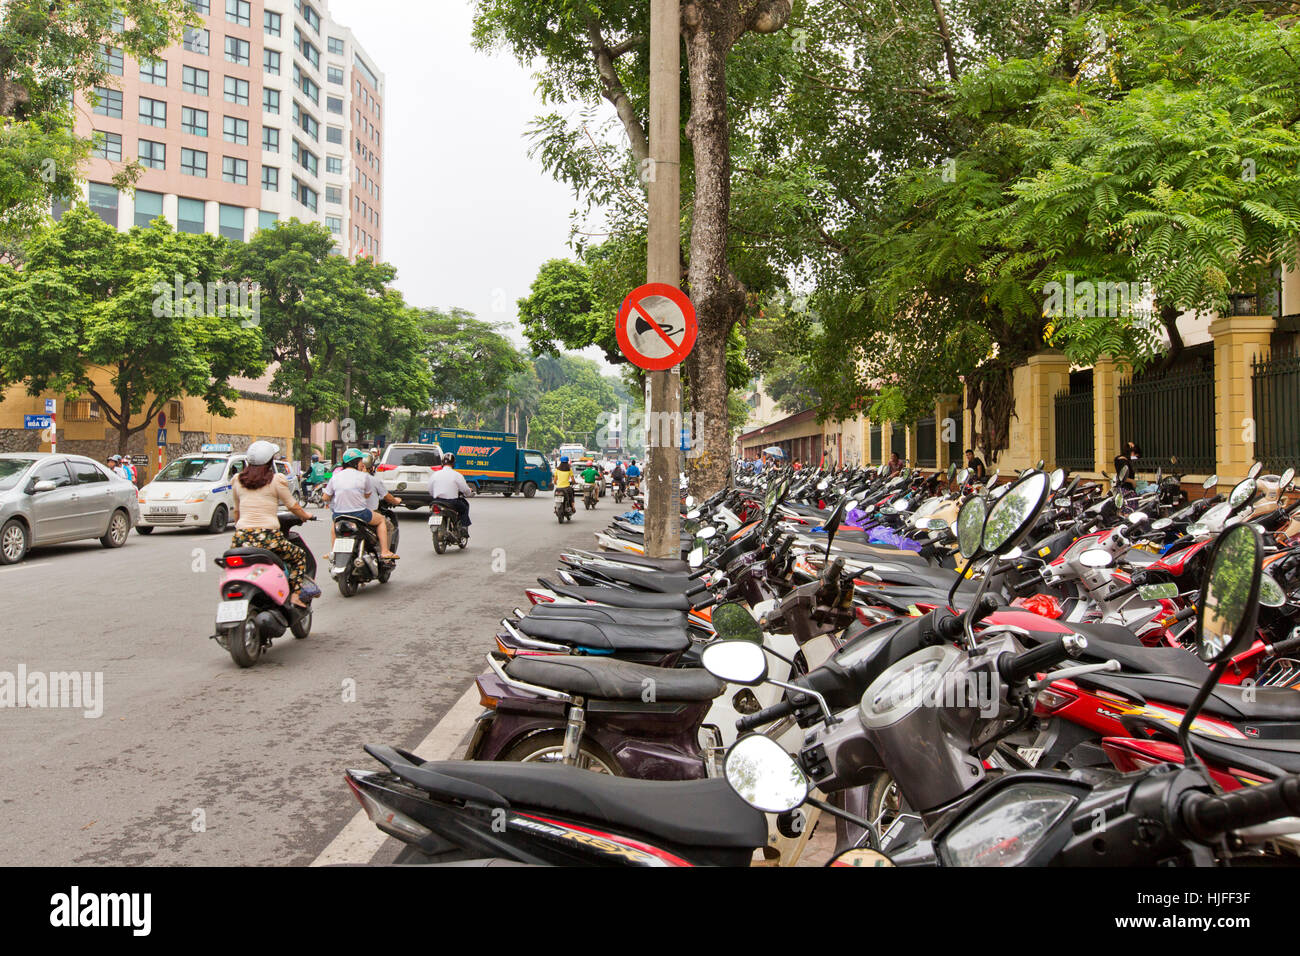 Strada di città, fila di motocicli e scooter parcheggiato sul marciapiede. Foto Stock